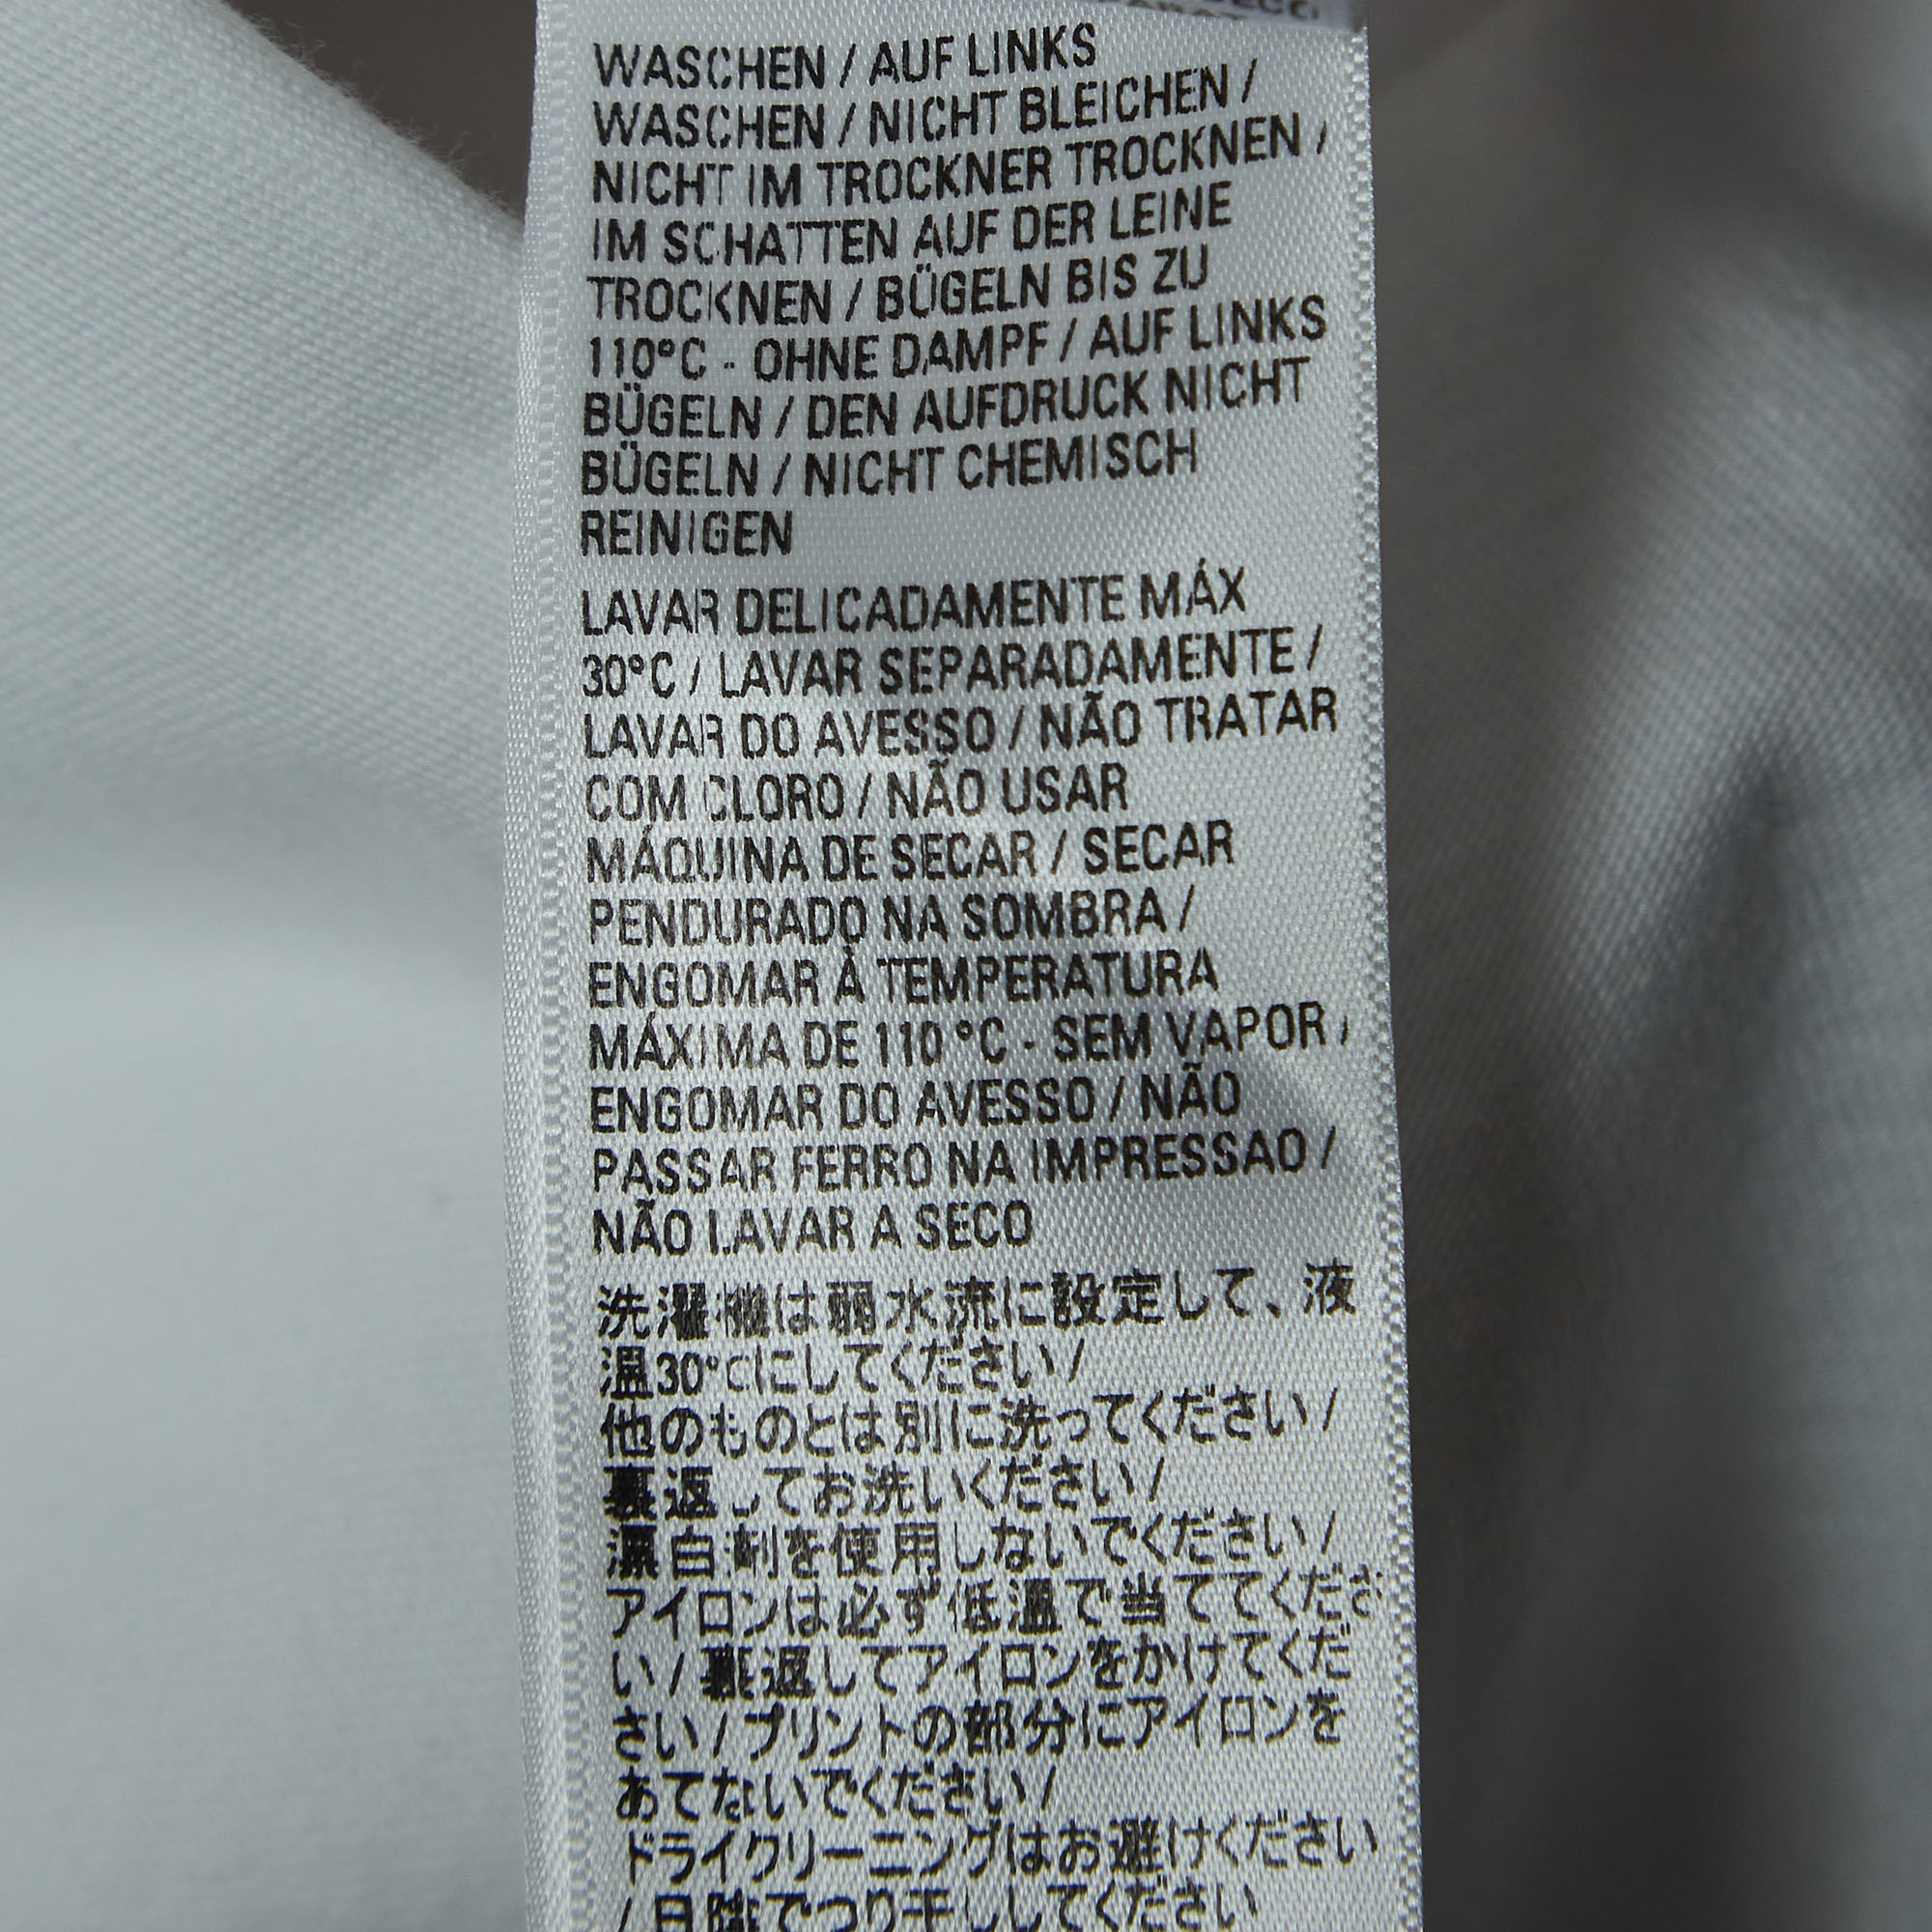 Balenciaga X Adidas White Logo Print Cotton Oversized T-Shirt M